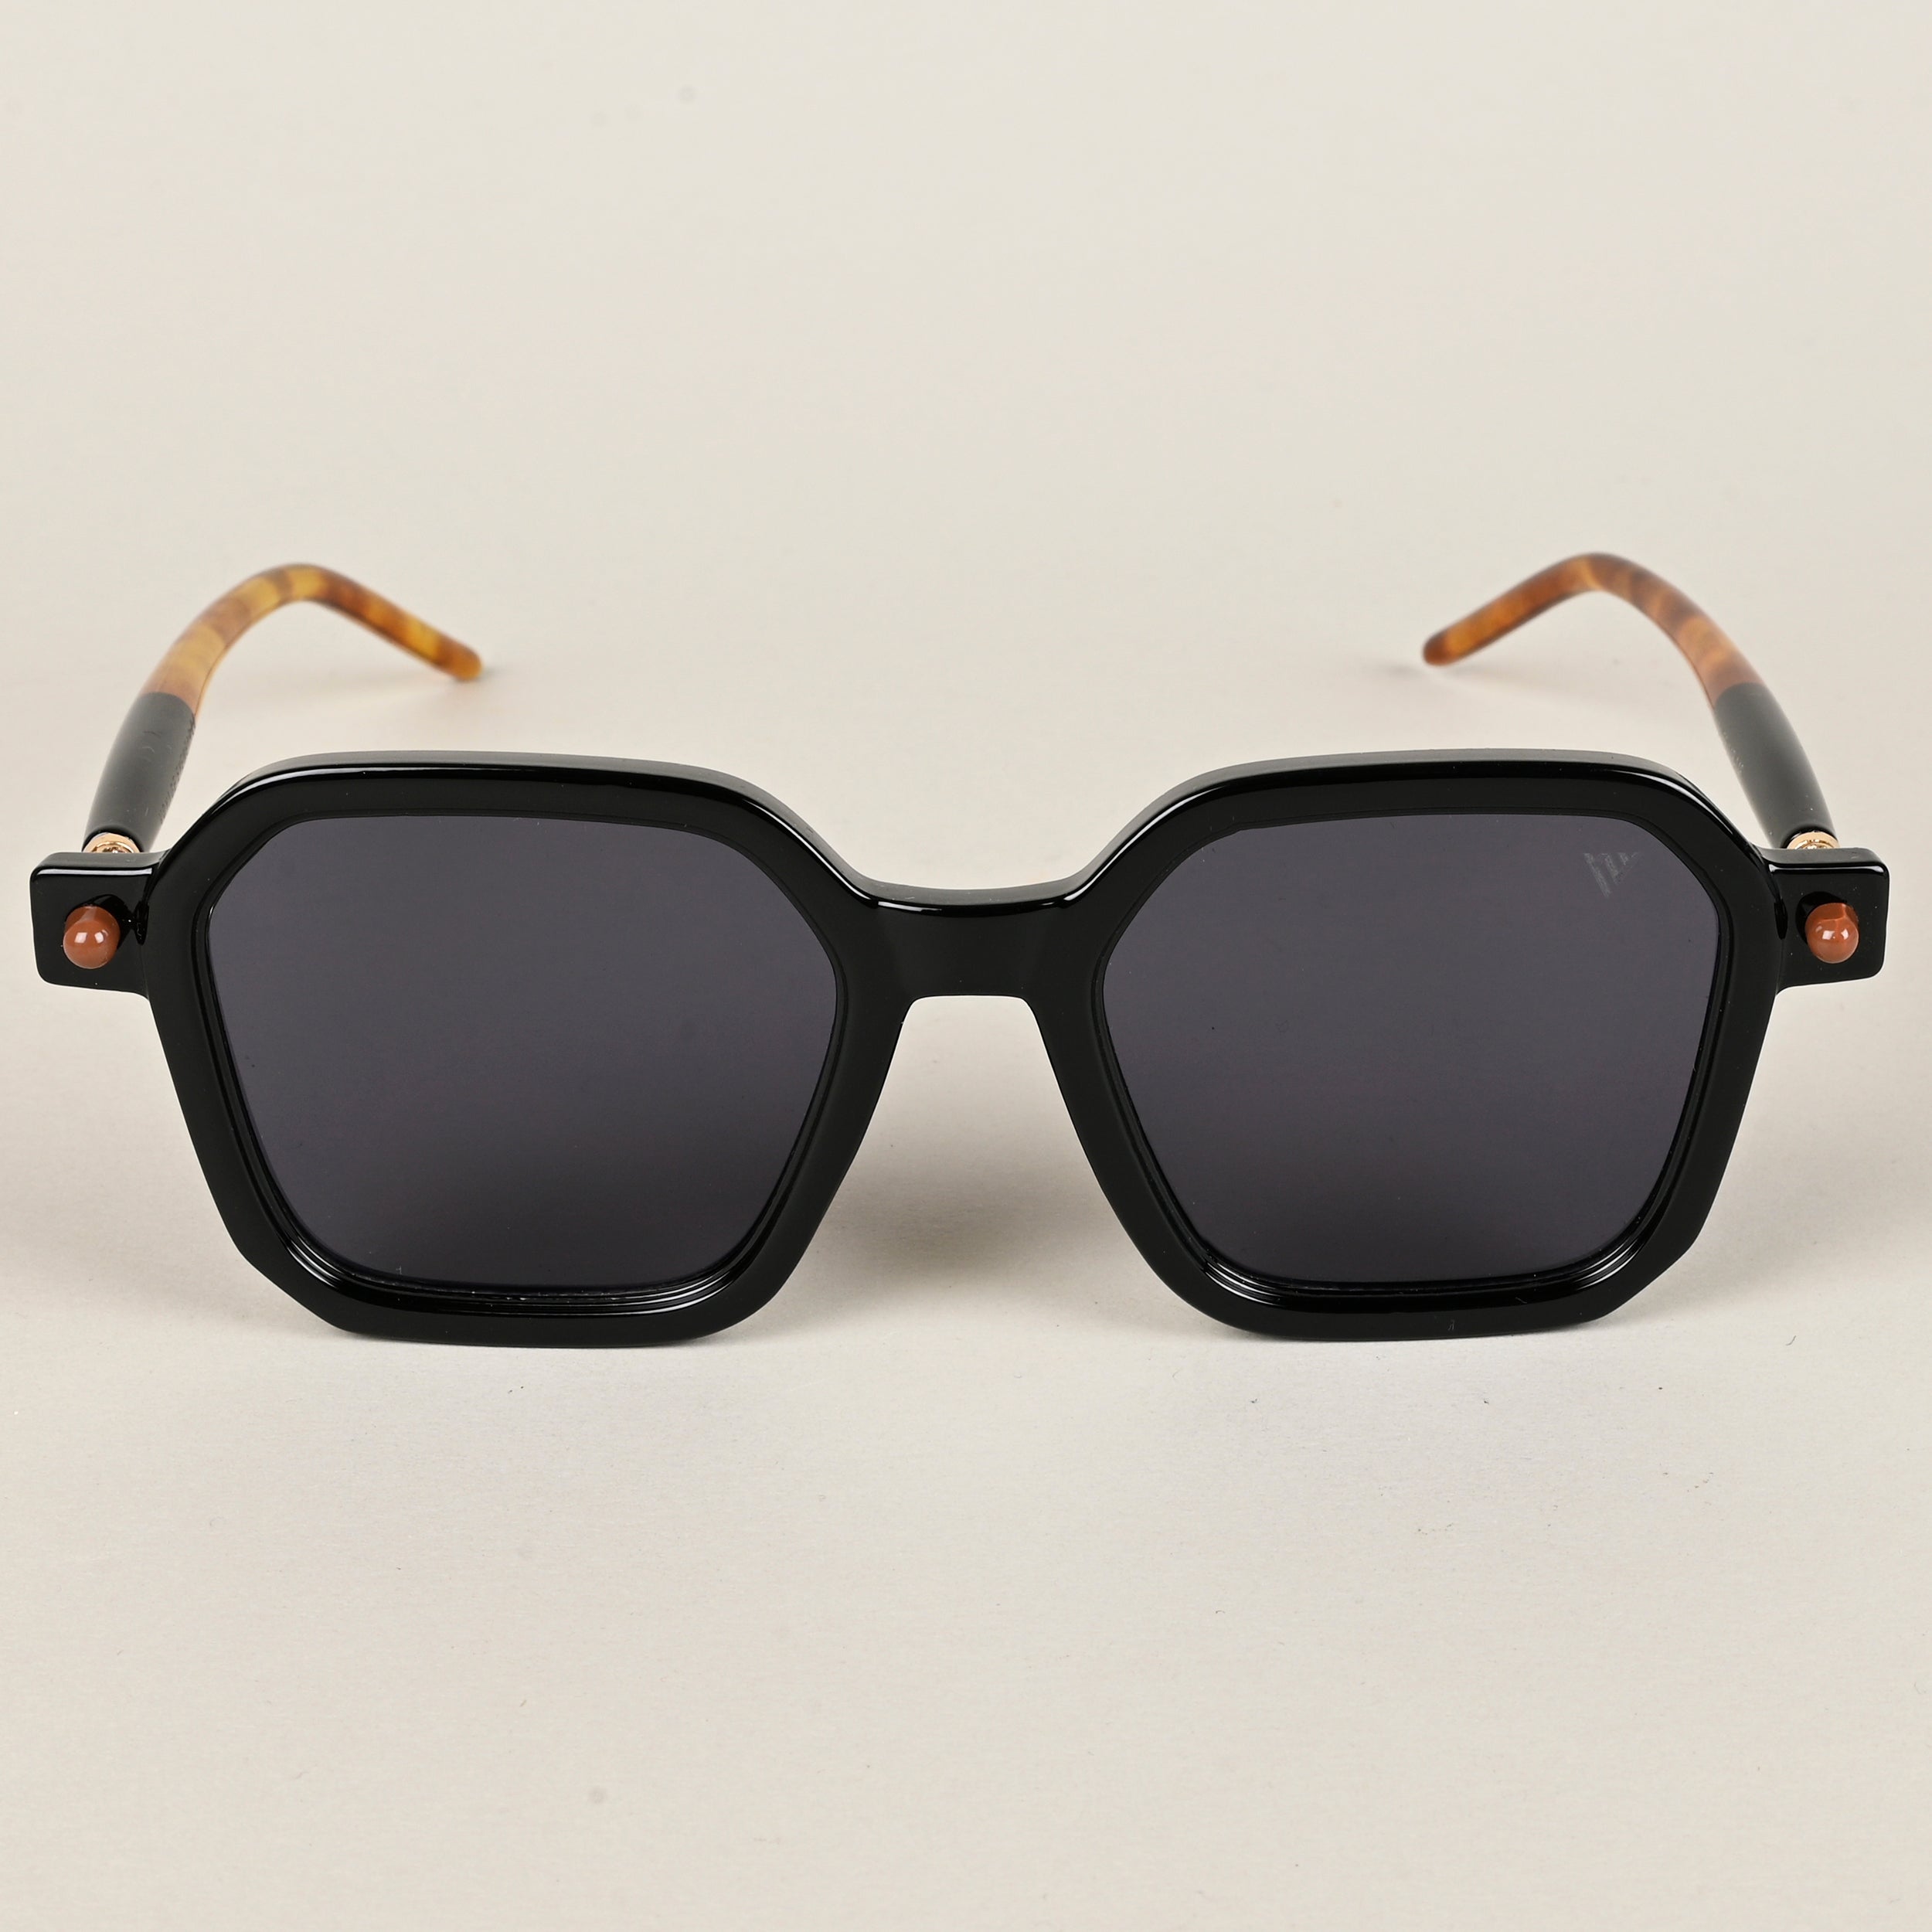 Voyage Square Sunglasses for Men & Women (Black Lens | Black Frame - MG5176)